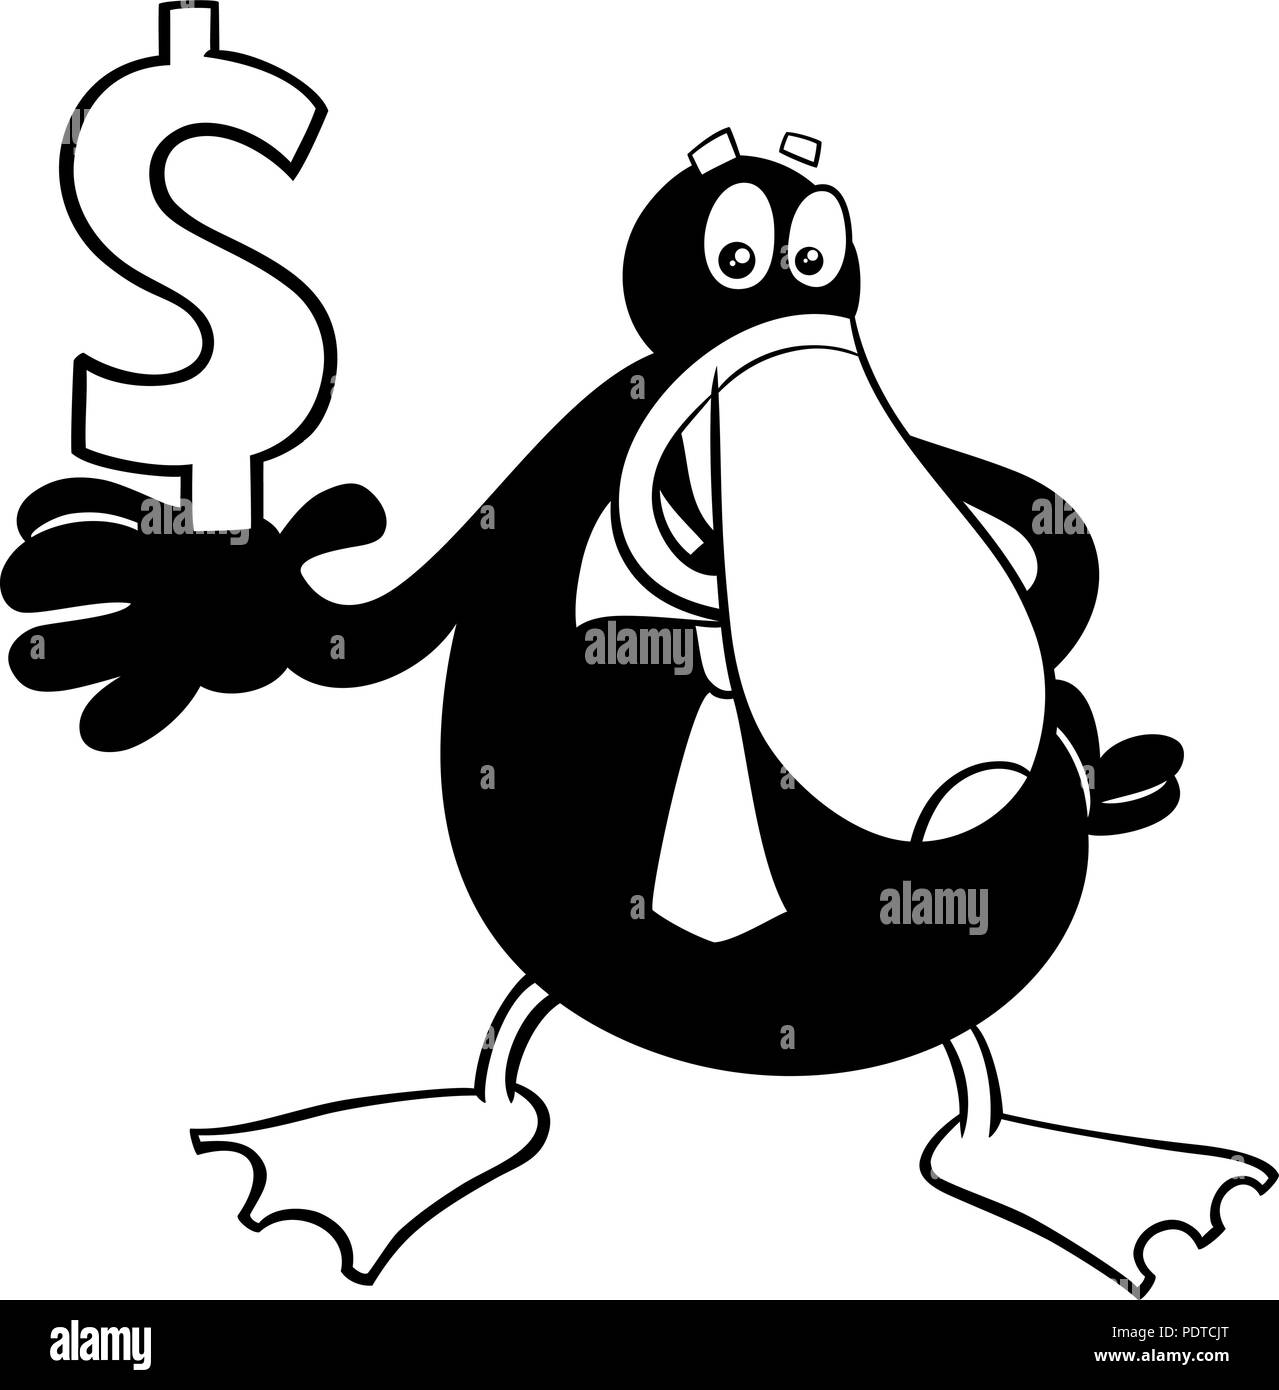 Illustration Cartoon noir et blanc de canard Businessman personnage animal avec signe Dollar Coloring Book Illustration de Vecteur